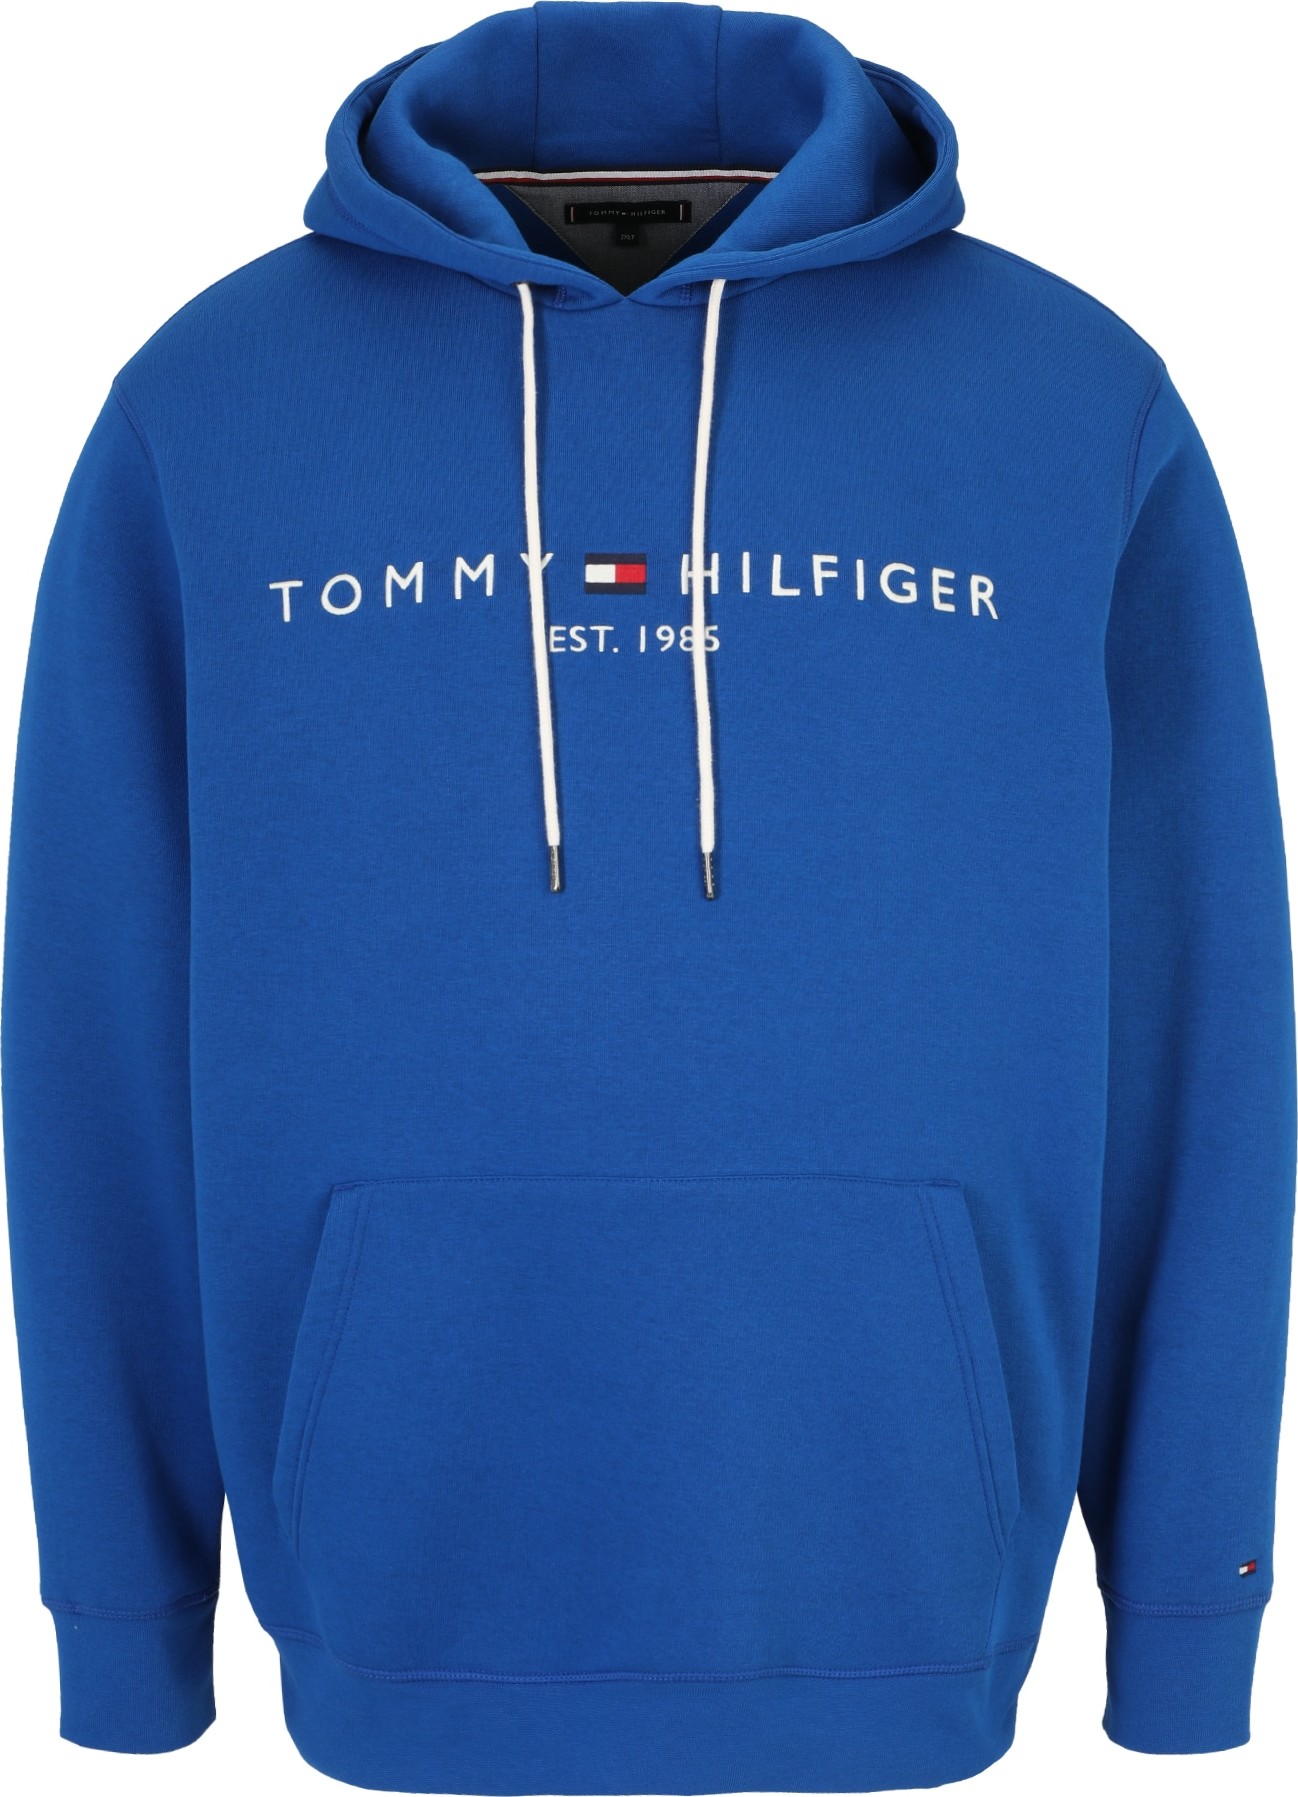 Mikina Tommy Hilfiger Big & Tall námořnická modř / královská modrá / červená / bílá